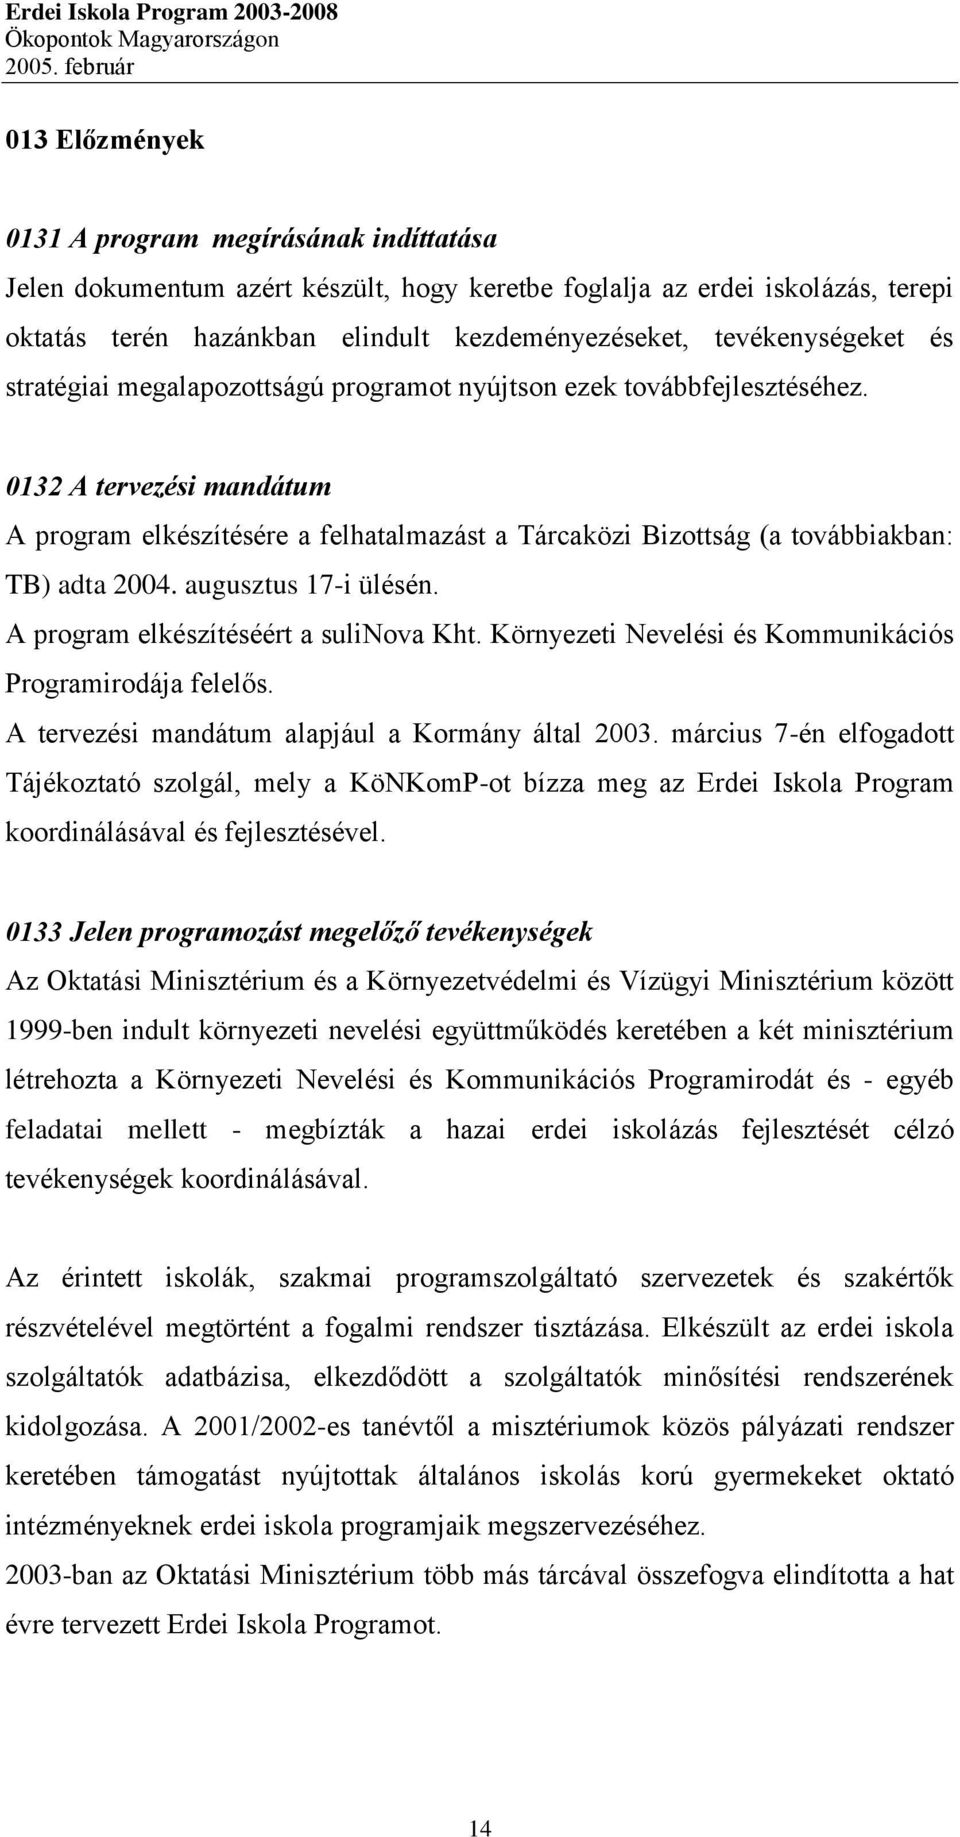 0132 A tervezési mandátum A program elkészítésére a felhatalmazást a Tárcaközi Bizottság (a továbbiakban: TB) adta 2004. augusztus 17-i ülésén. A program elkészítéséért a sulinova Kht.